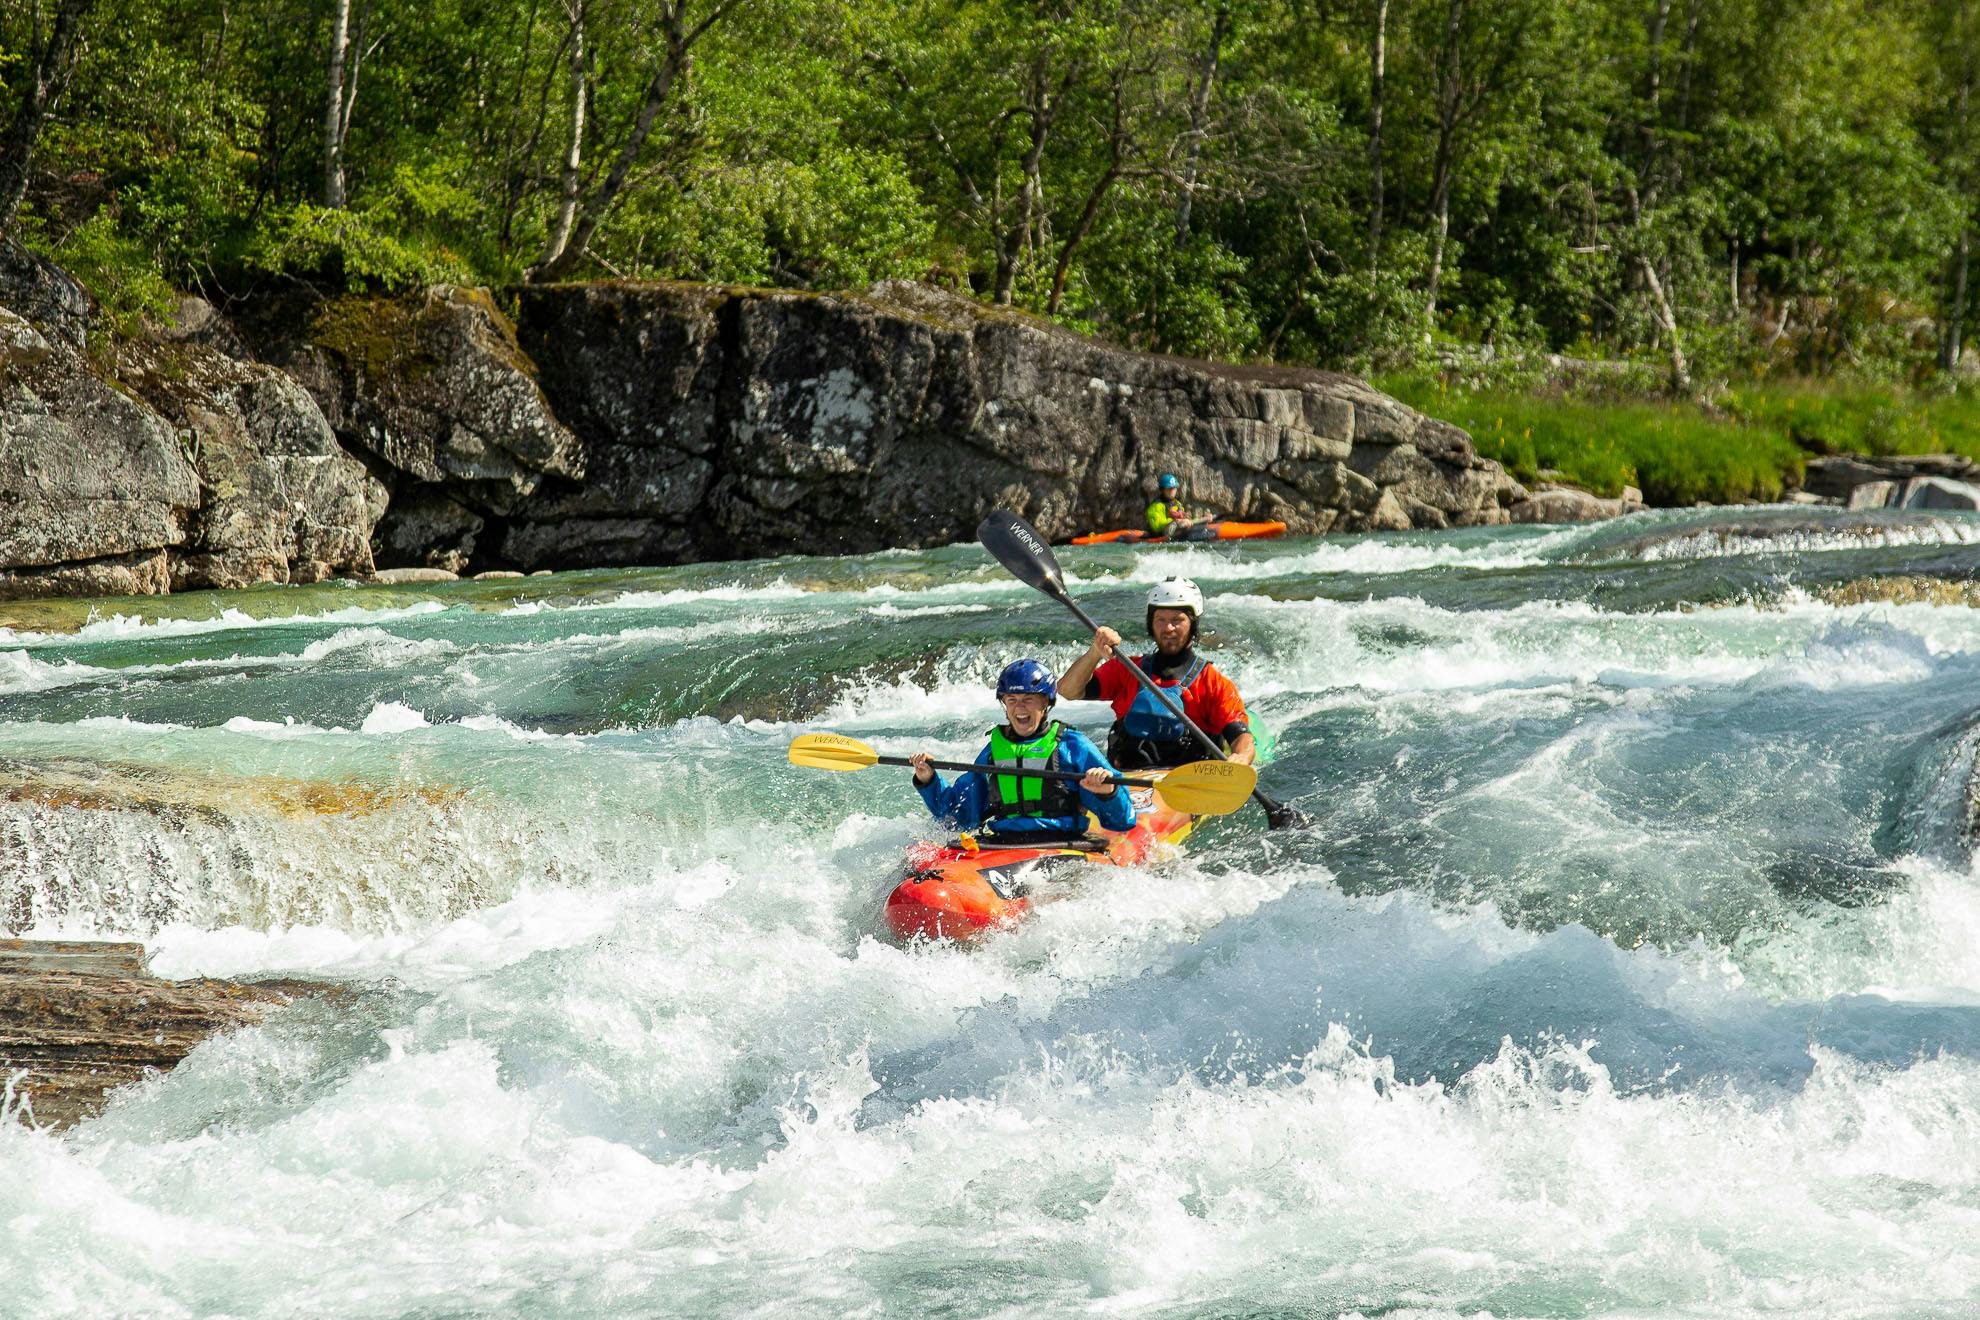 Experiencia en kayak en tándem en un río de aguas bravas